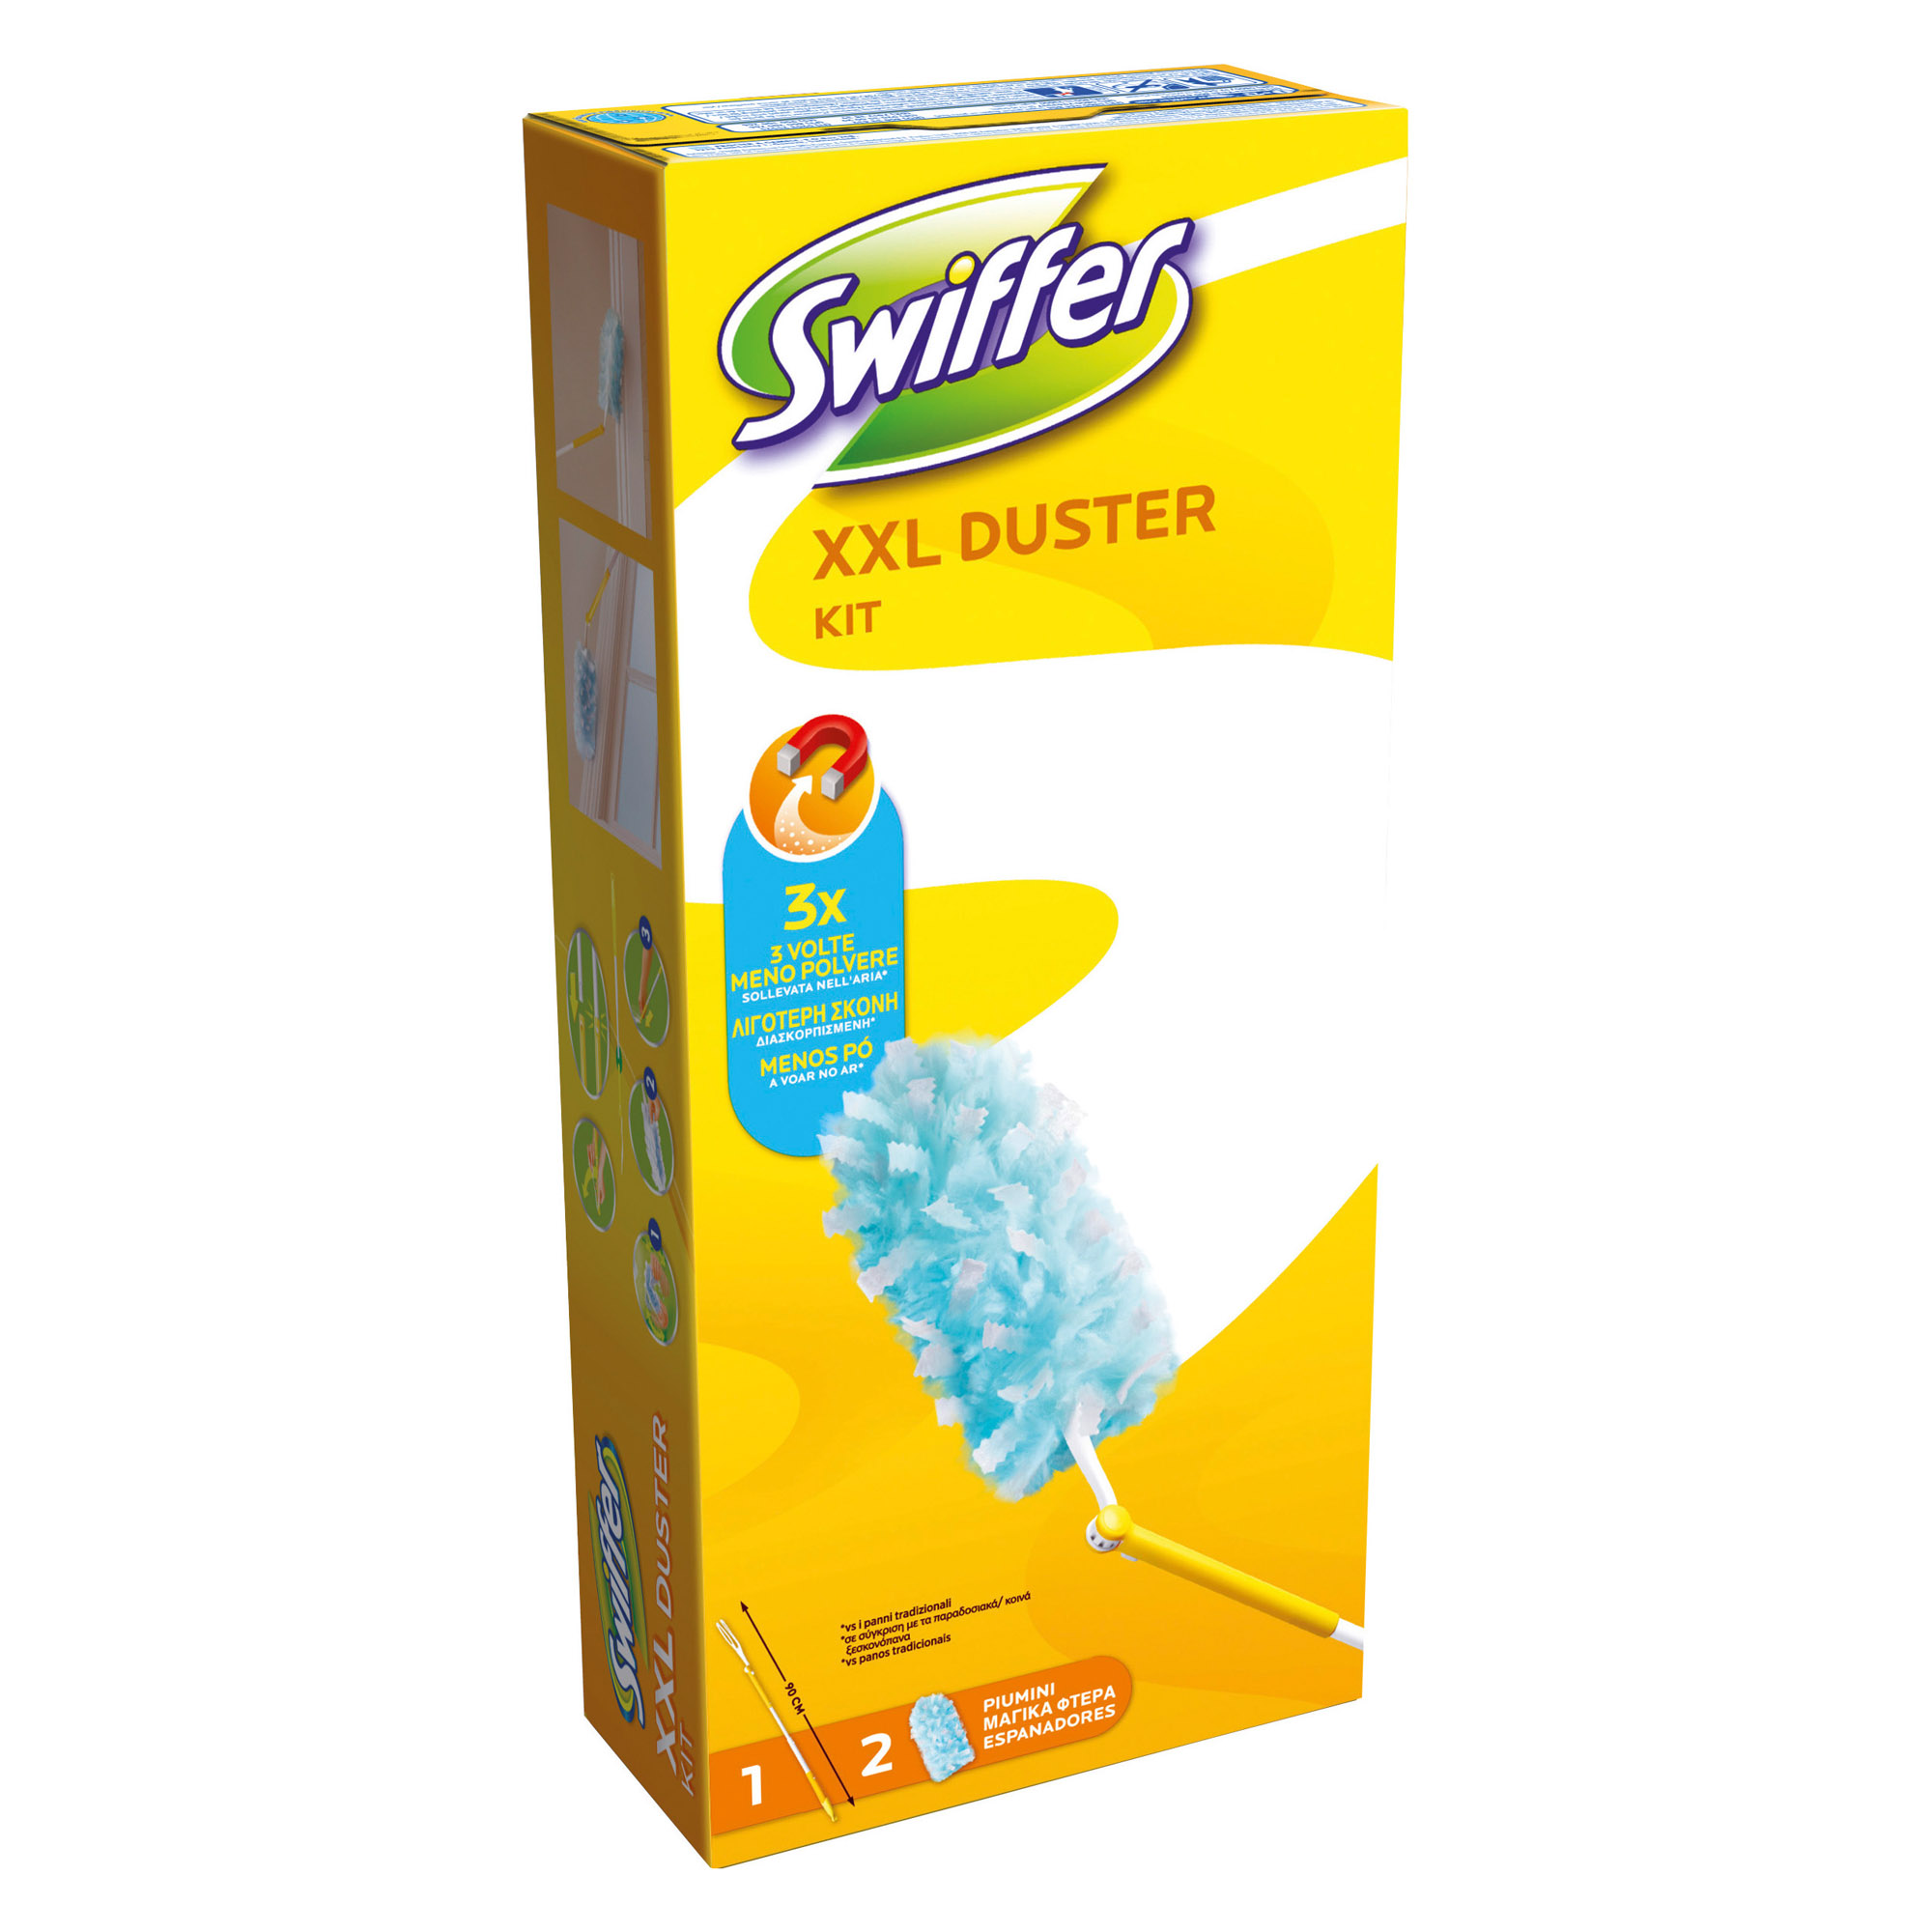 Swiffer - Kit de démarrage Swiffer 3D Clean : 1 Balai, 4 Lingettes